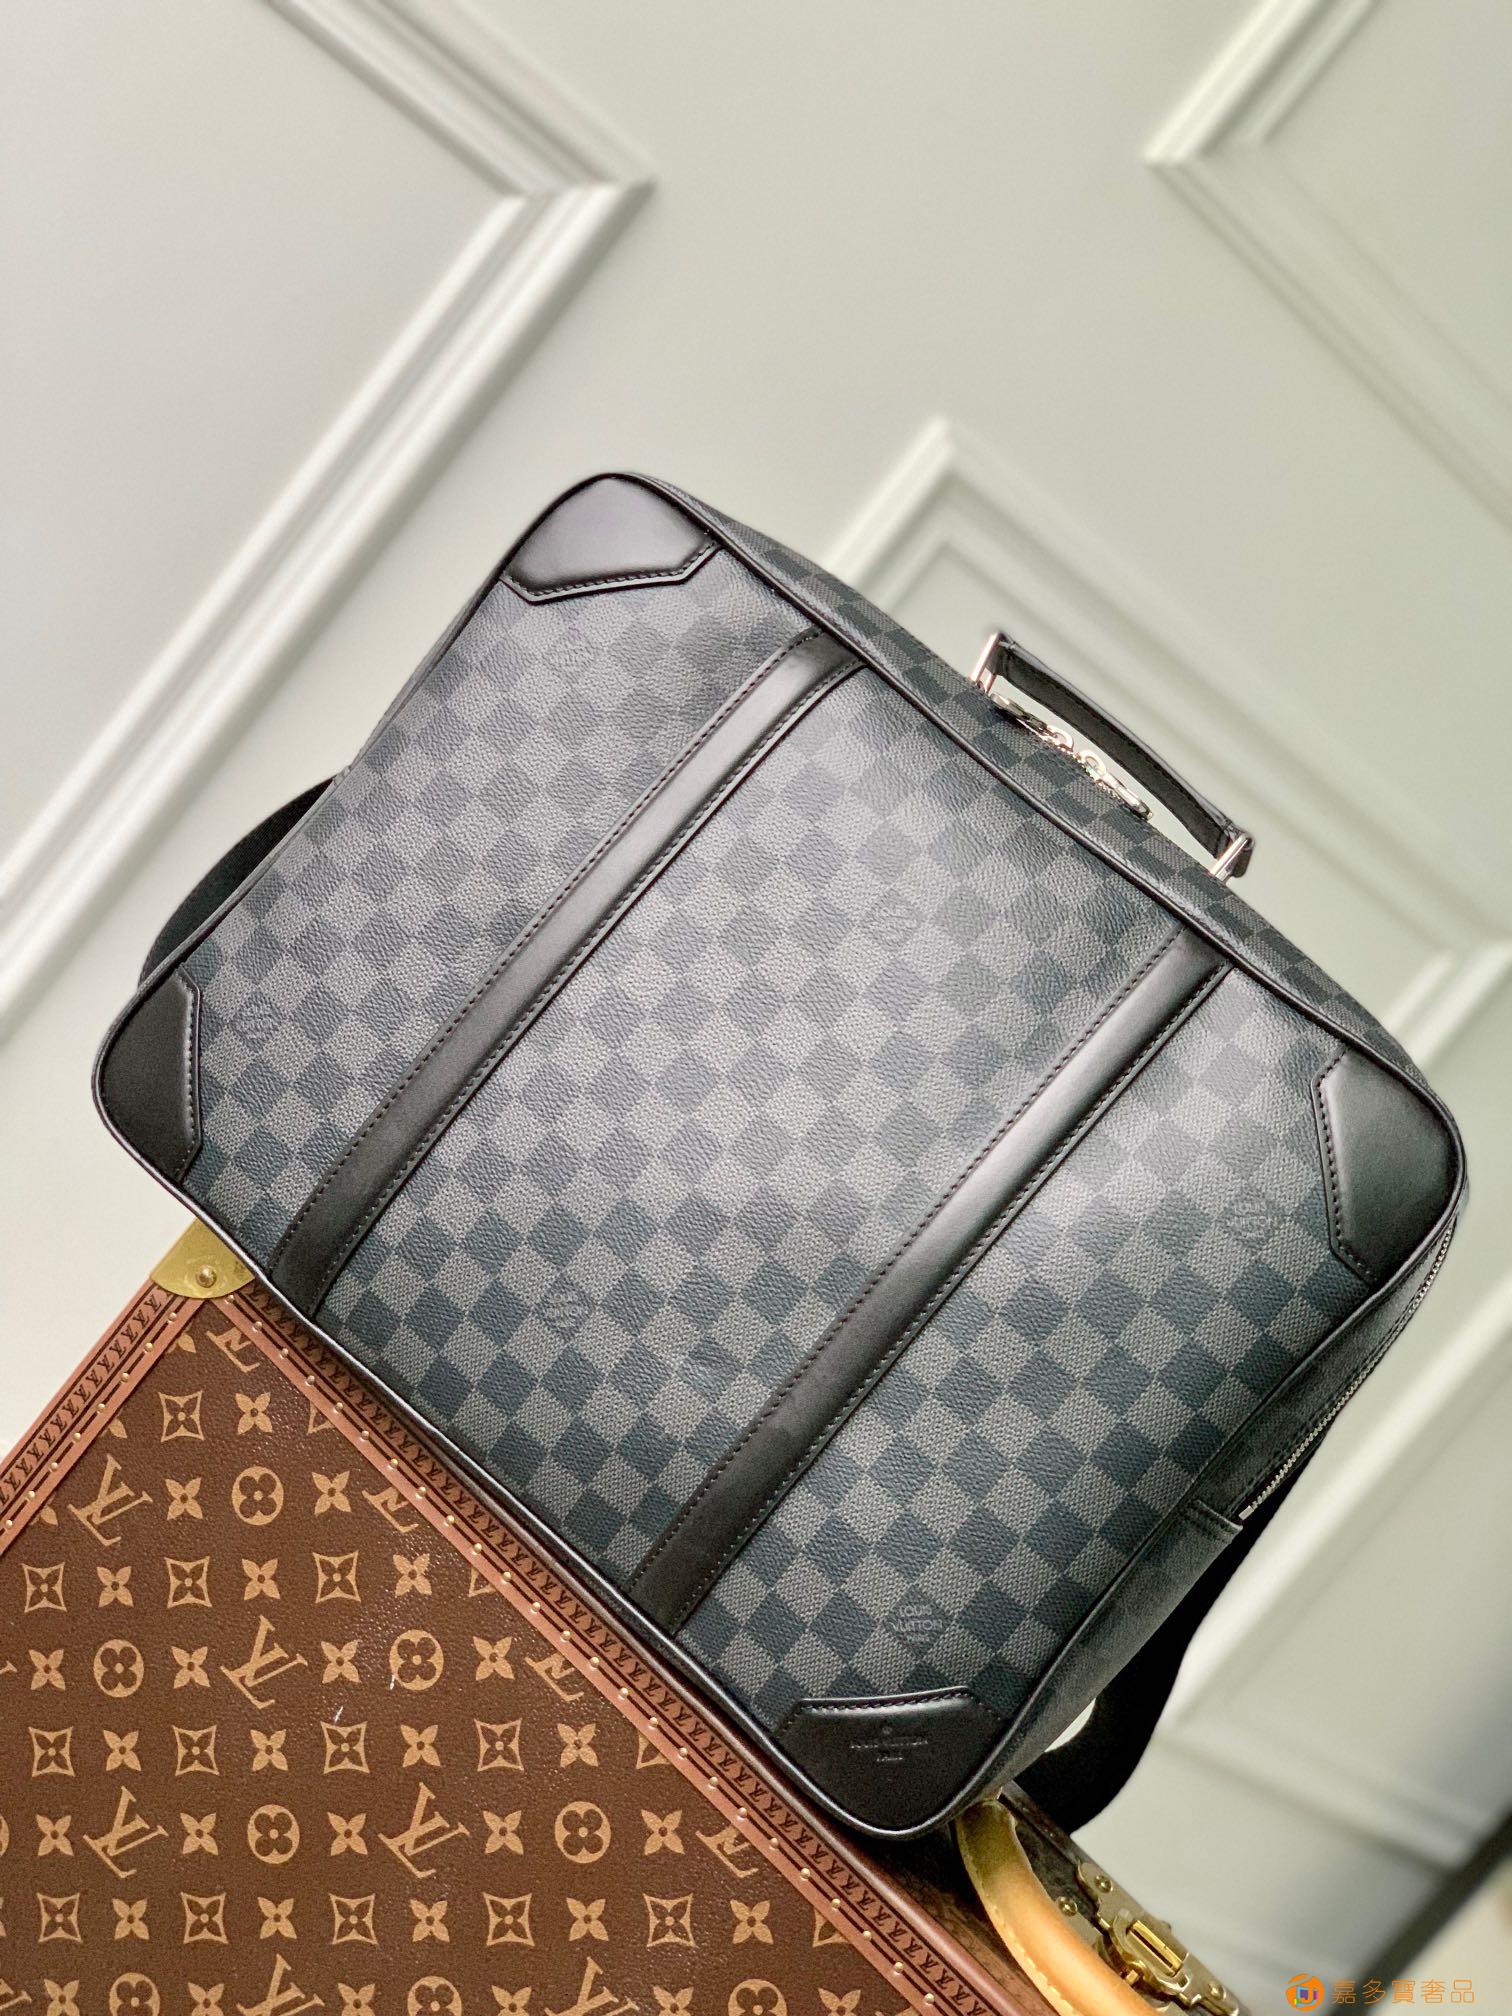 Briefcase旅行包,手提 斜挎 双肩包多用途,空间充裕